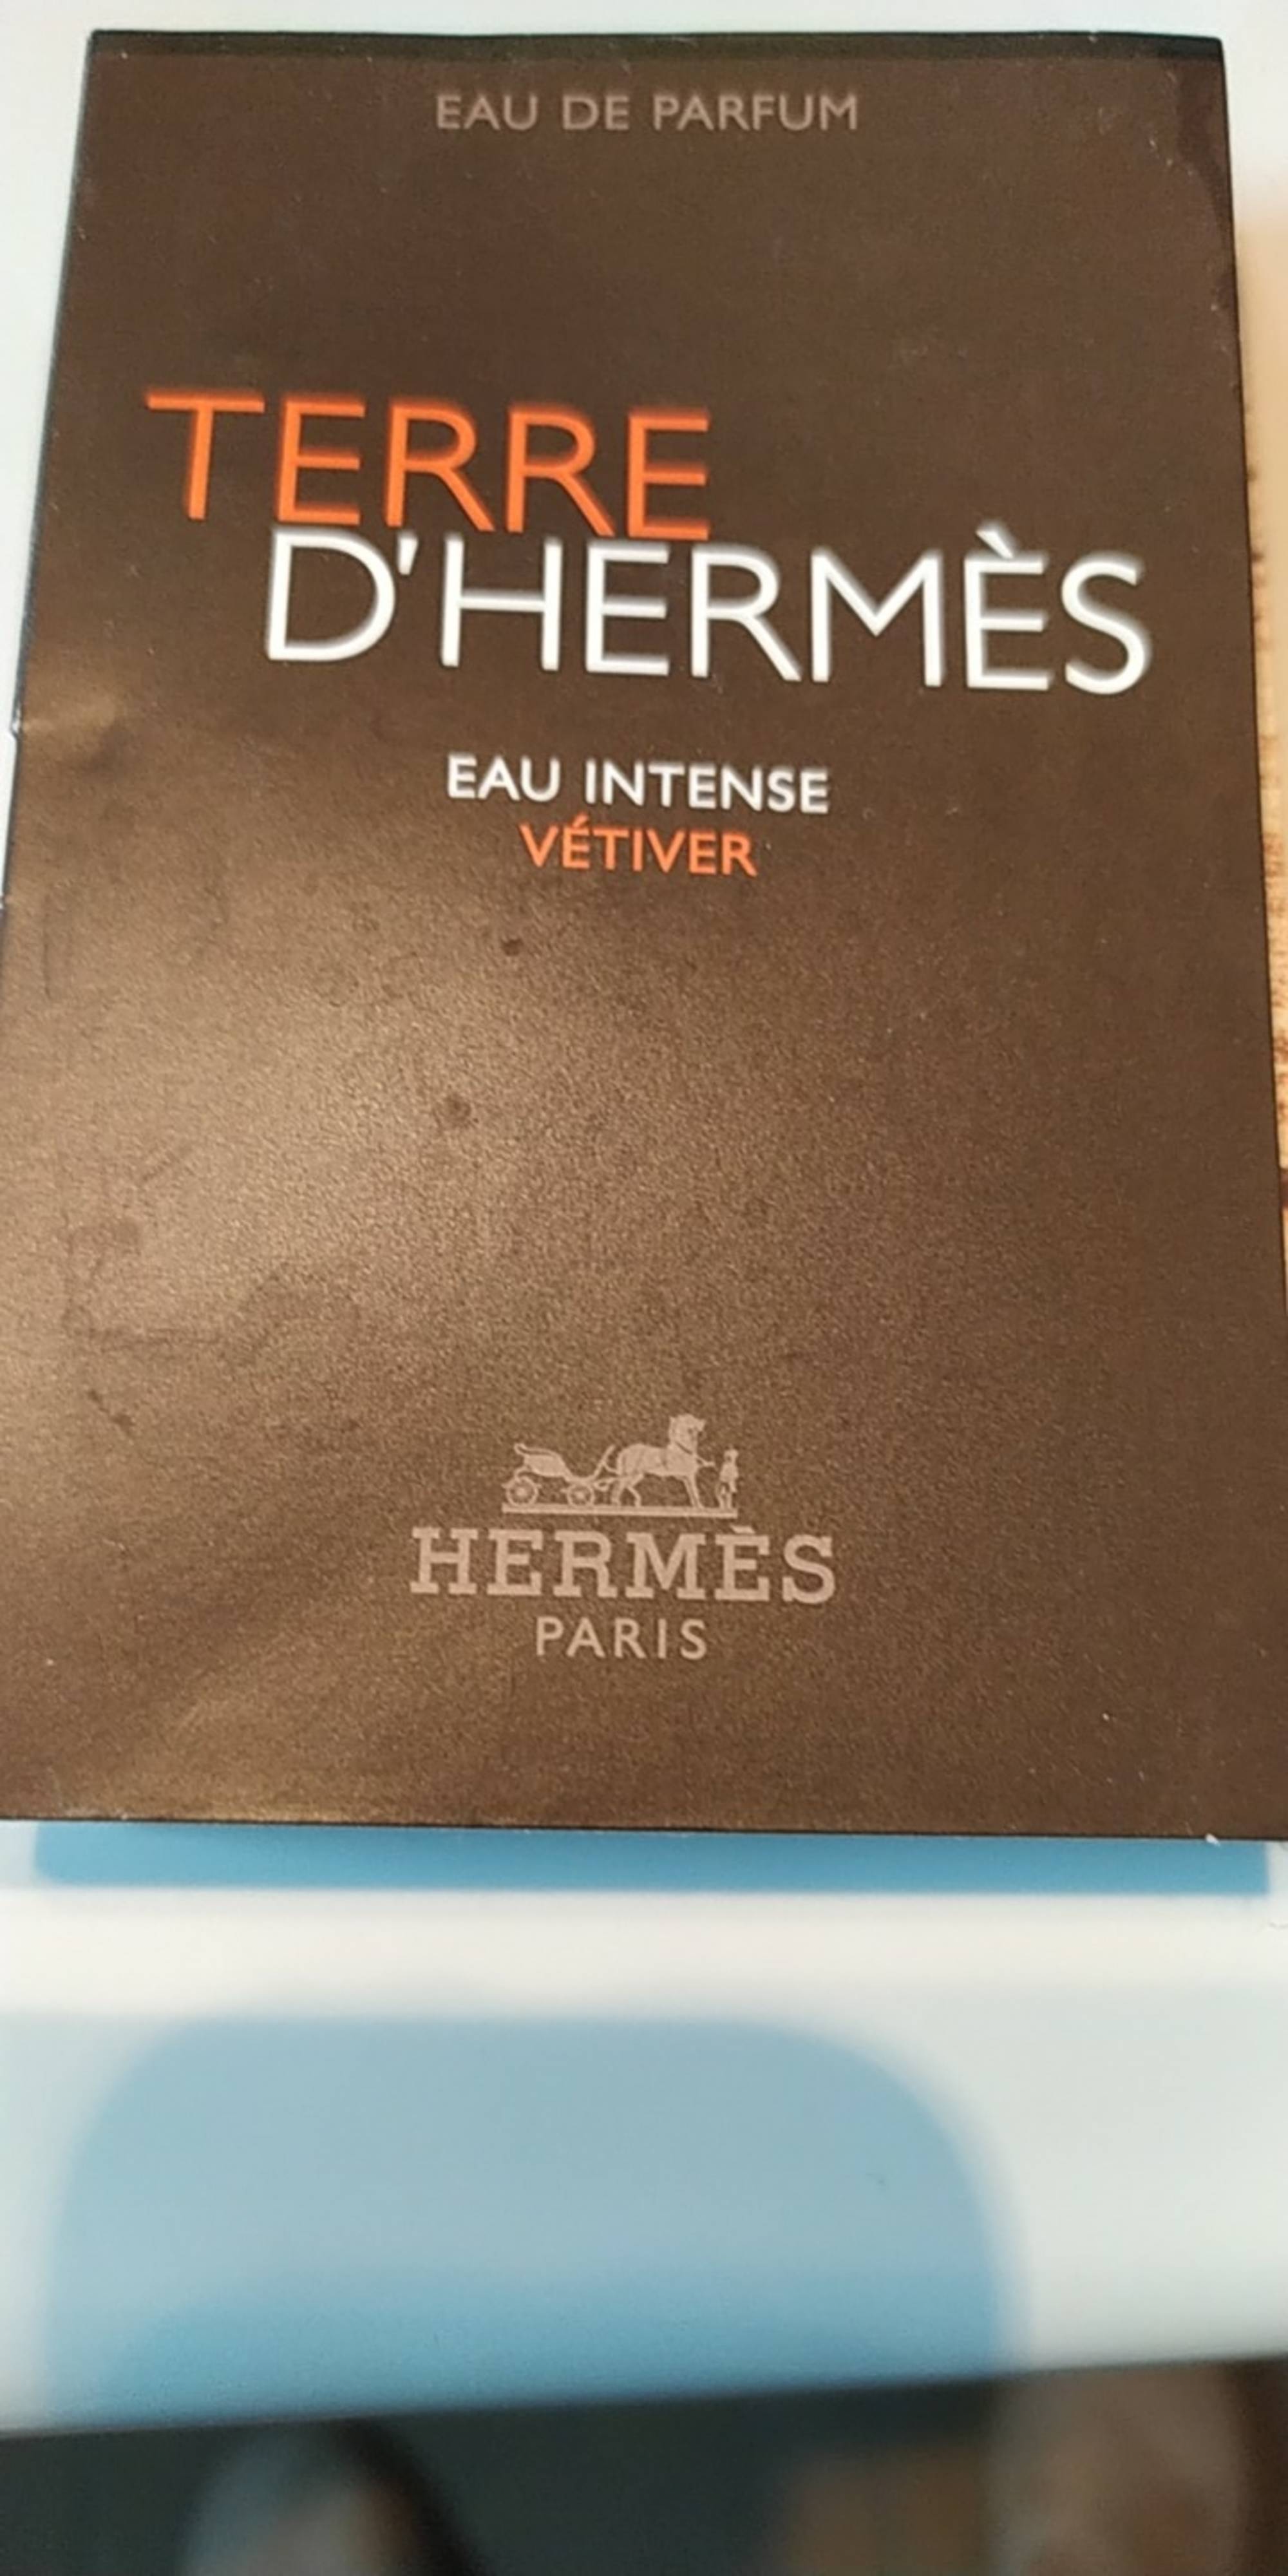 HERMES - Terre d'Hermès - Eau de parfum